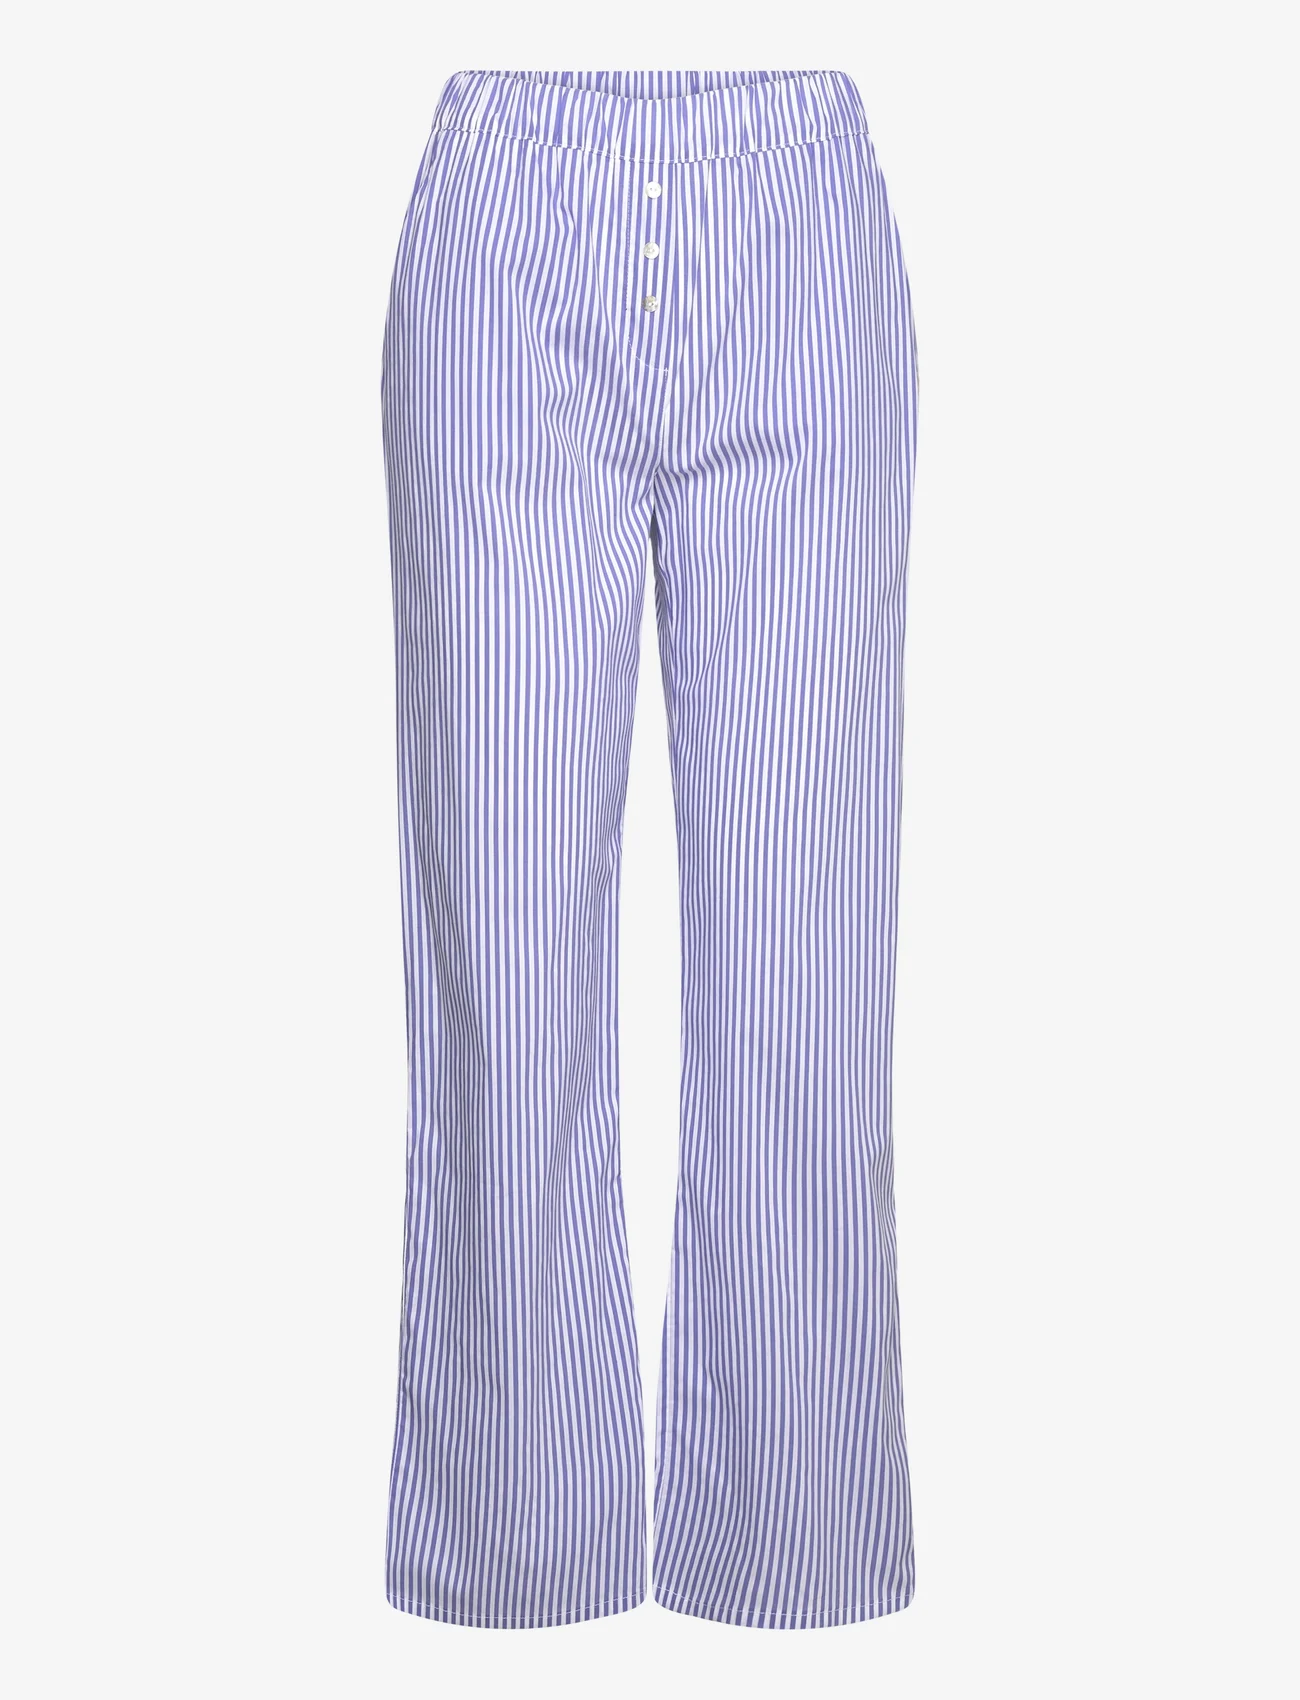 Etam - Cleeo Trouser Pyjama Bottom - mažiausios kainos - blue - 0